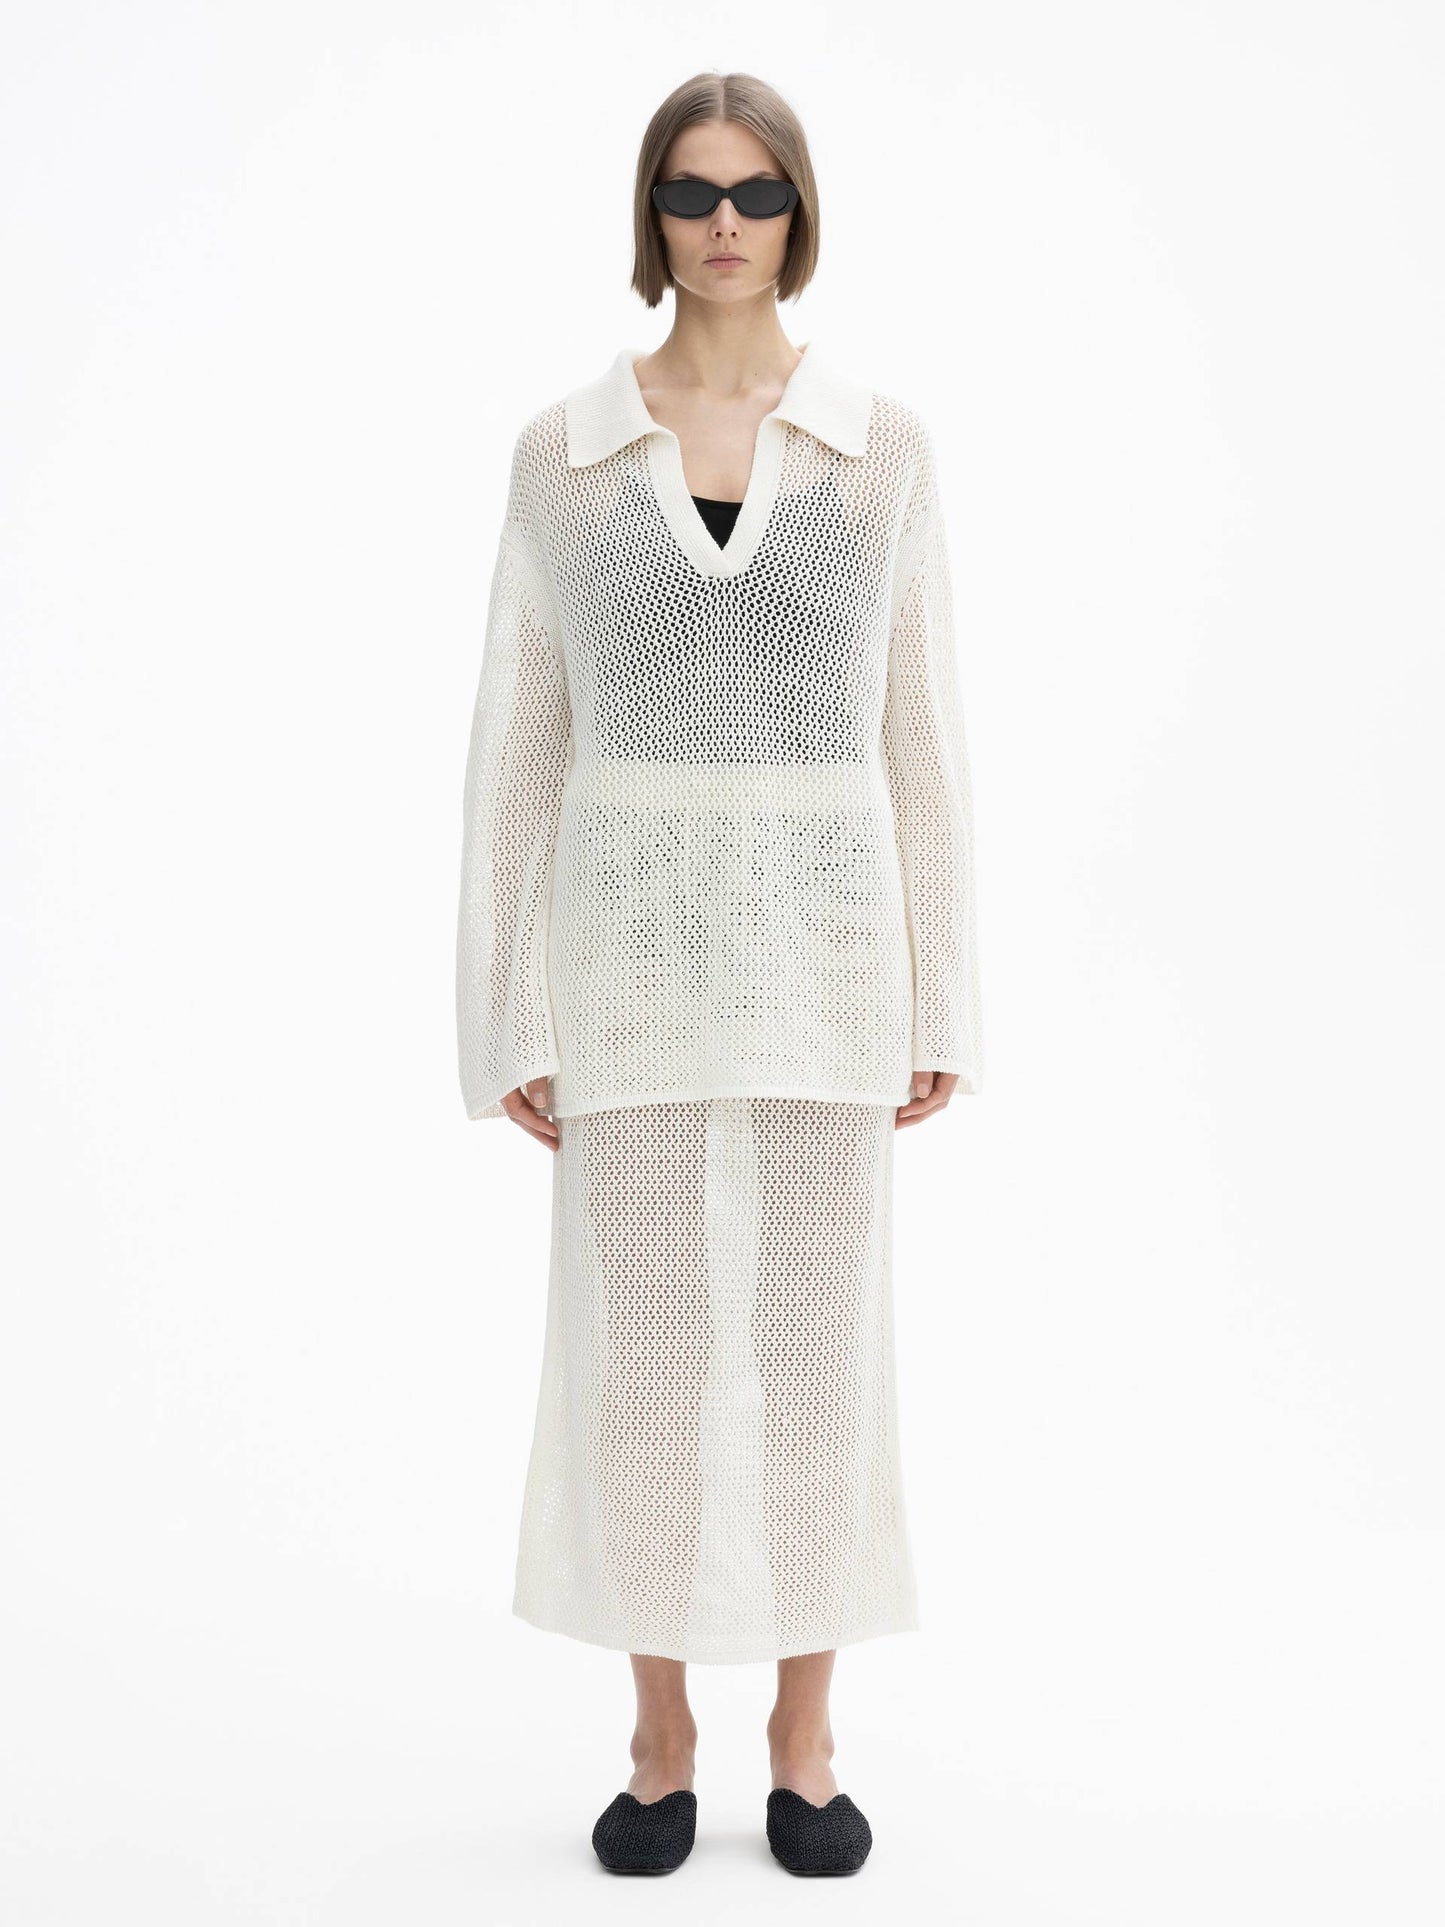 Crochet Knit, Off White, Skirt